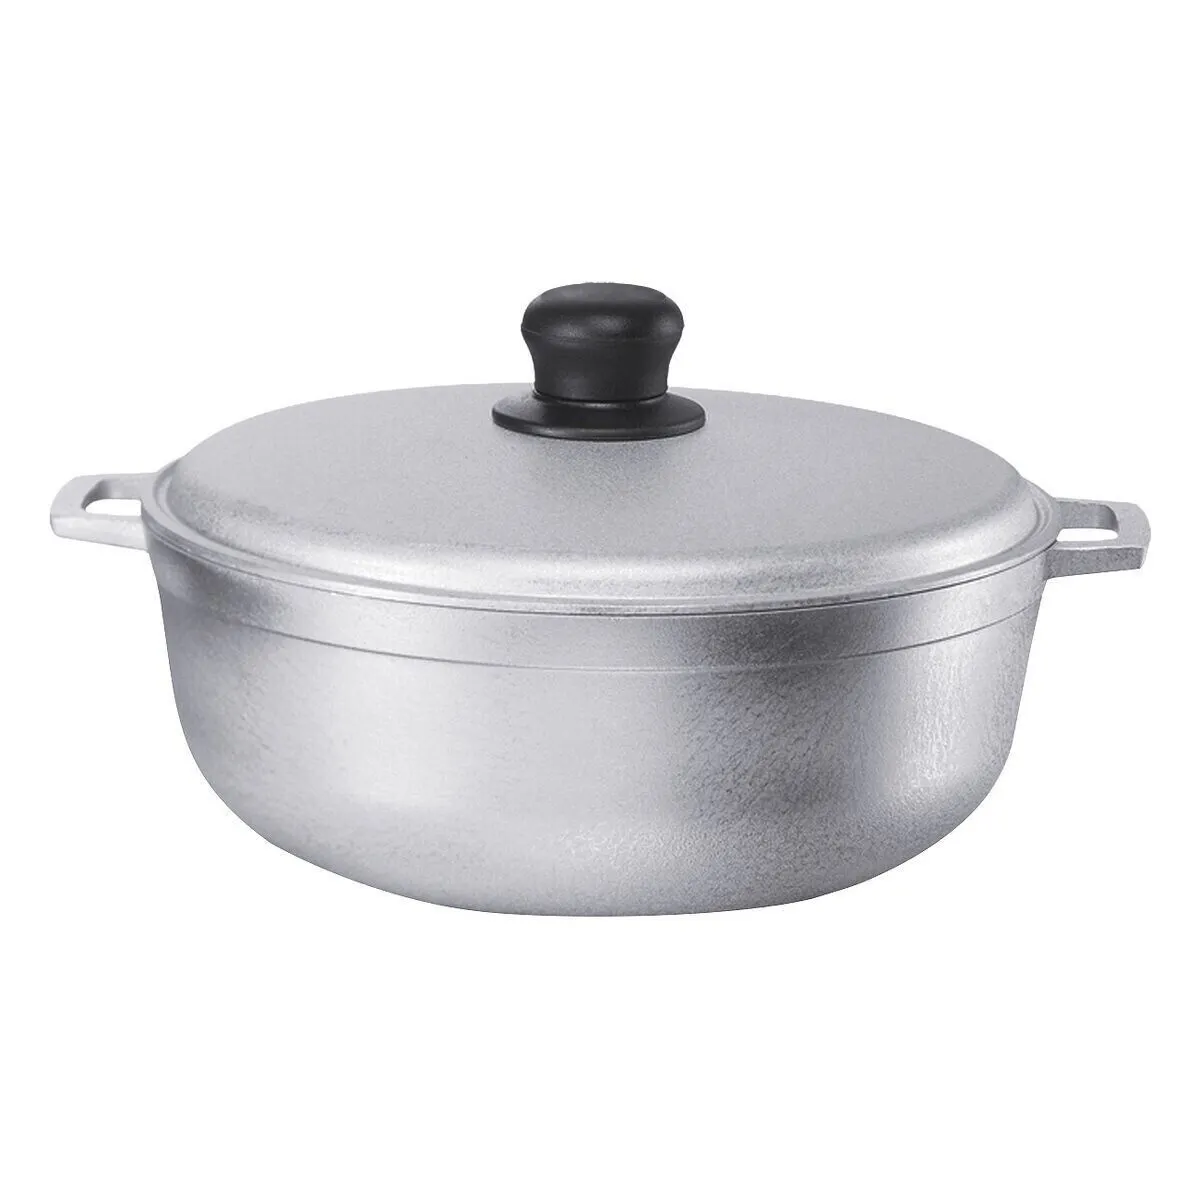 Alüminyum Pot bile ısı dağılımı ve hızlı pişirme güveç tenceresi kapaklı tencere pirinç patates kızartması ve daha fazlası için Ideal